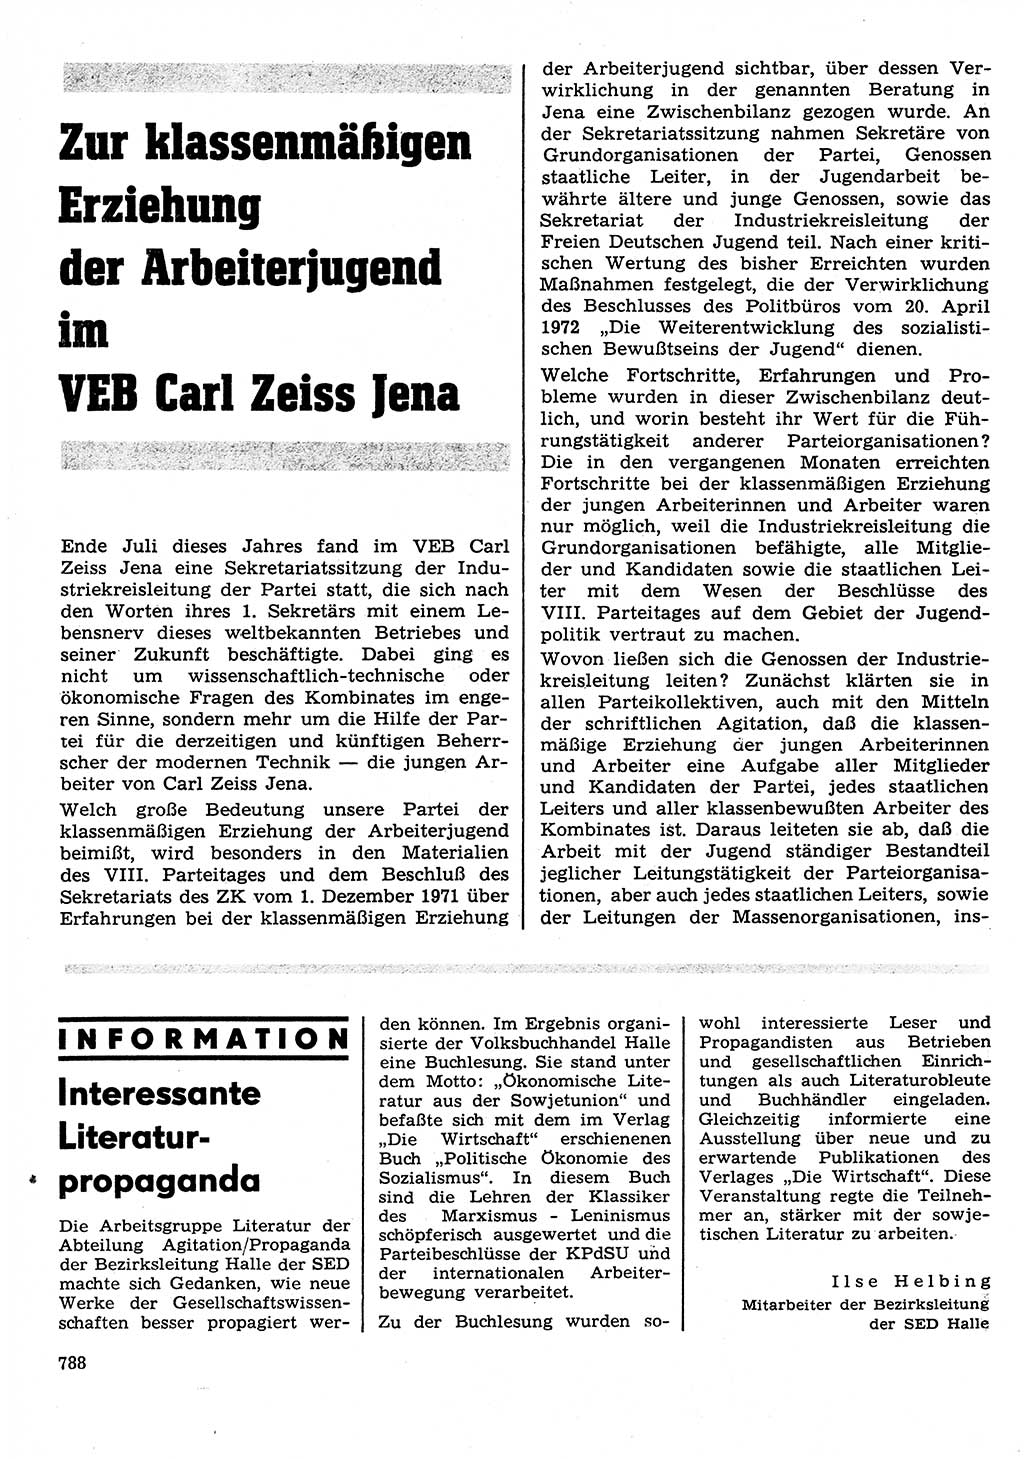 Neuer Weg (NW), Organ des Zentralkomitees (ZK) der SED (Sozialistische Einheitspartei Deutschlands) für Fragen des Parteilebens, 27. Jahrgang [Deutsche Demokratische Republik (DDR)] 1972, Seite 788 (NW ZK SED DDR 1972, S. 788)